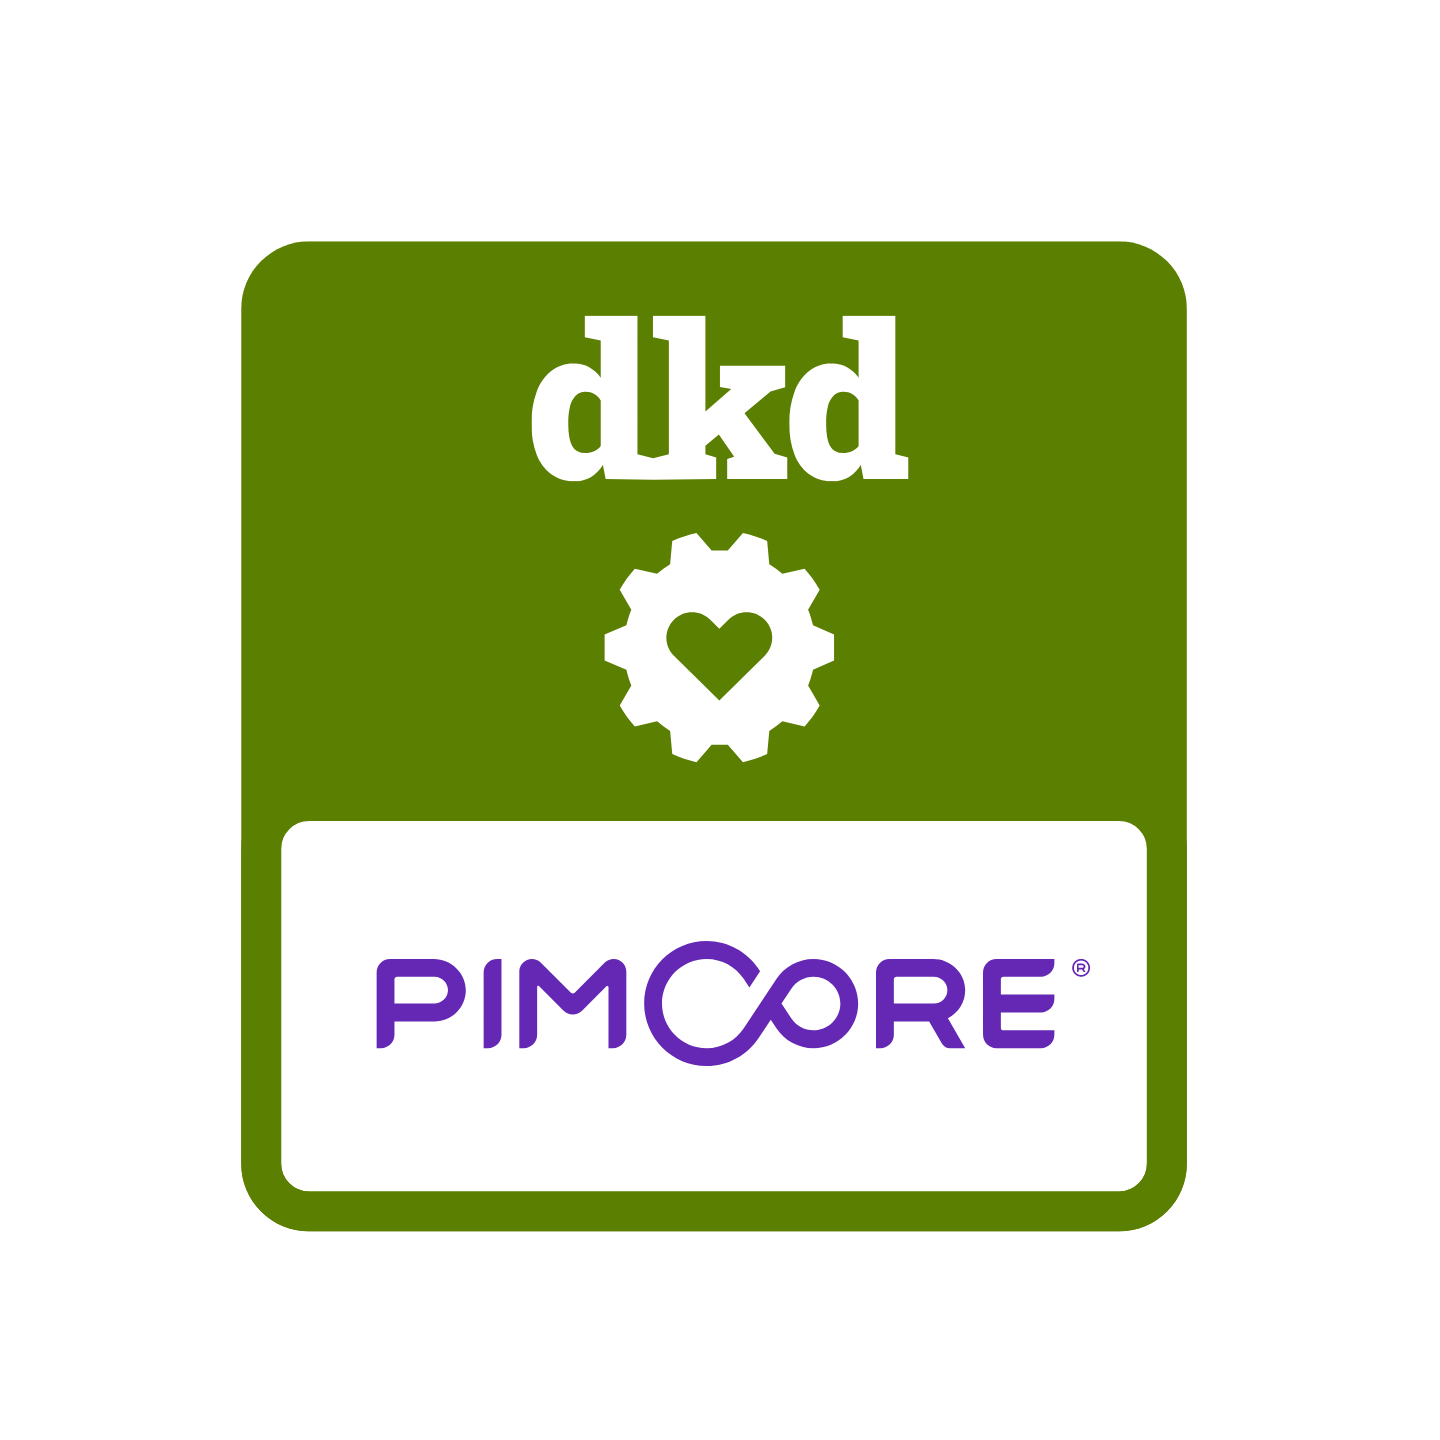 Weisses dkd-Logo auf grünem Hintergrund und einem Pimcore-Logo